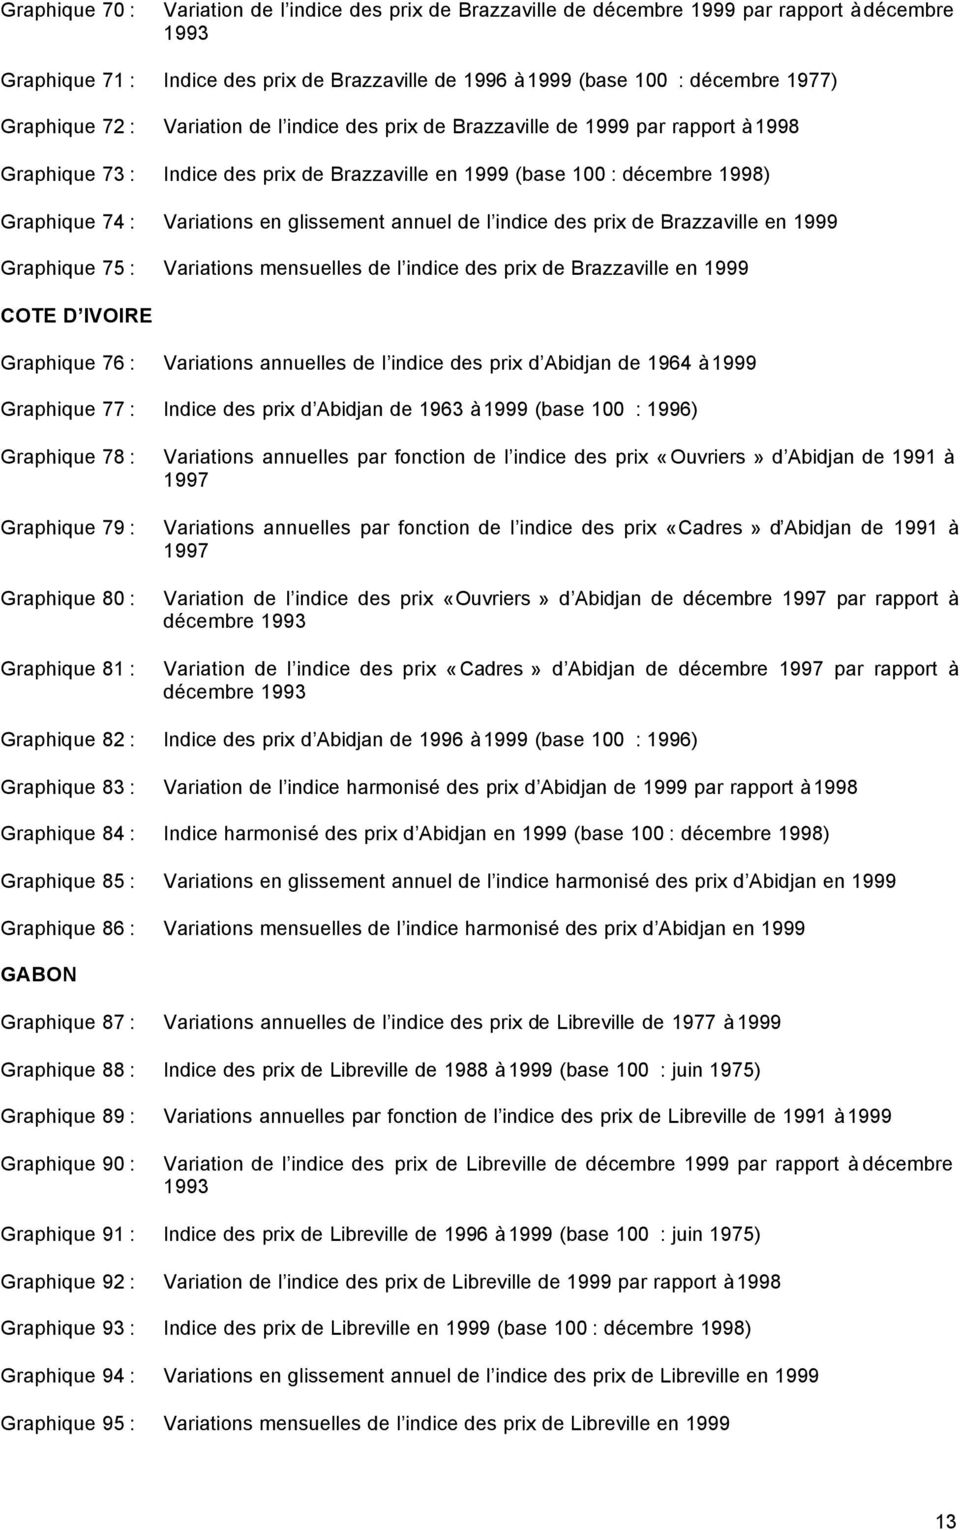 glissement annuel de l indice des prix de Brazzaville en 1999 Graphique 75 : Variations mensuelles de l indice des prix de Brazzaville en 1999 COTE D IVOIRE Graphique 76 : Variations annuelles de l